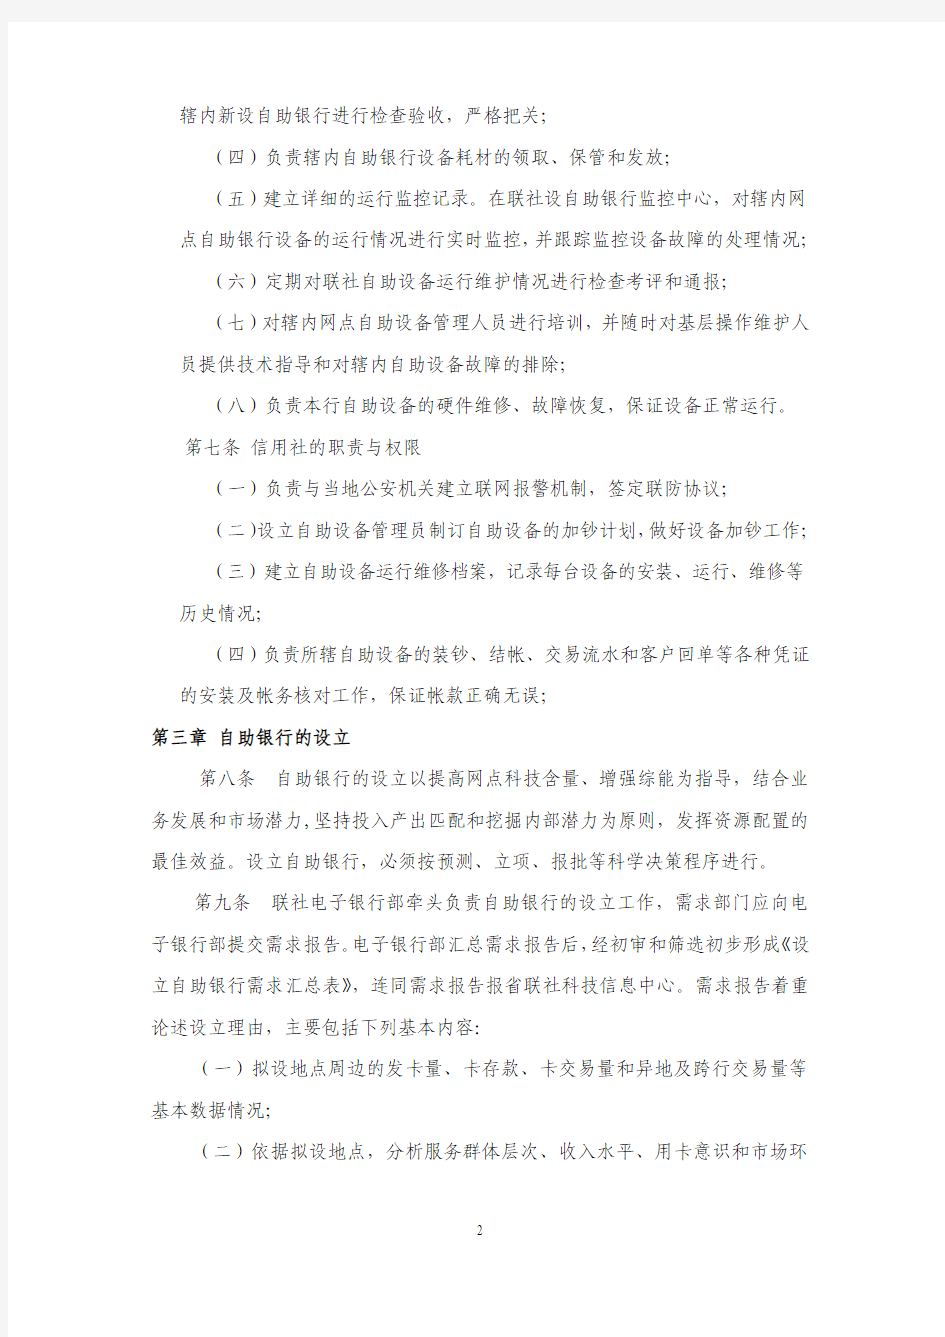 庐江县联社关于自助银行管理办法